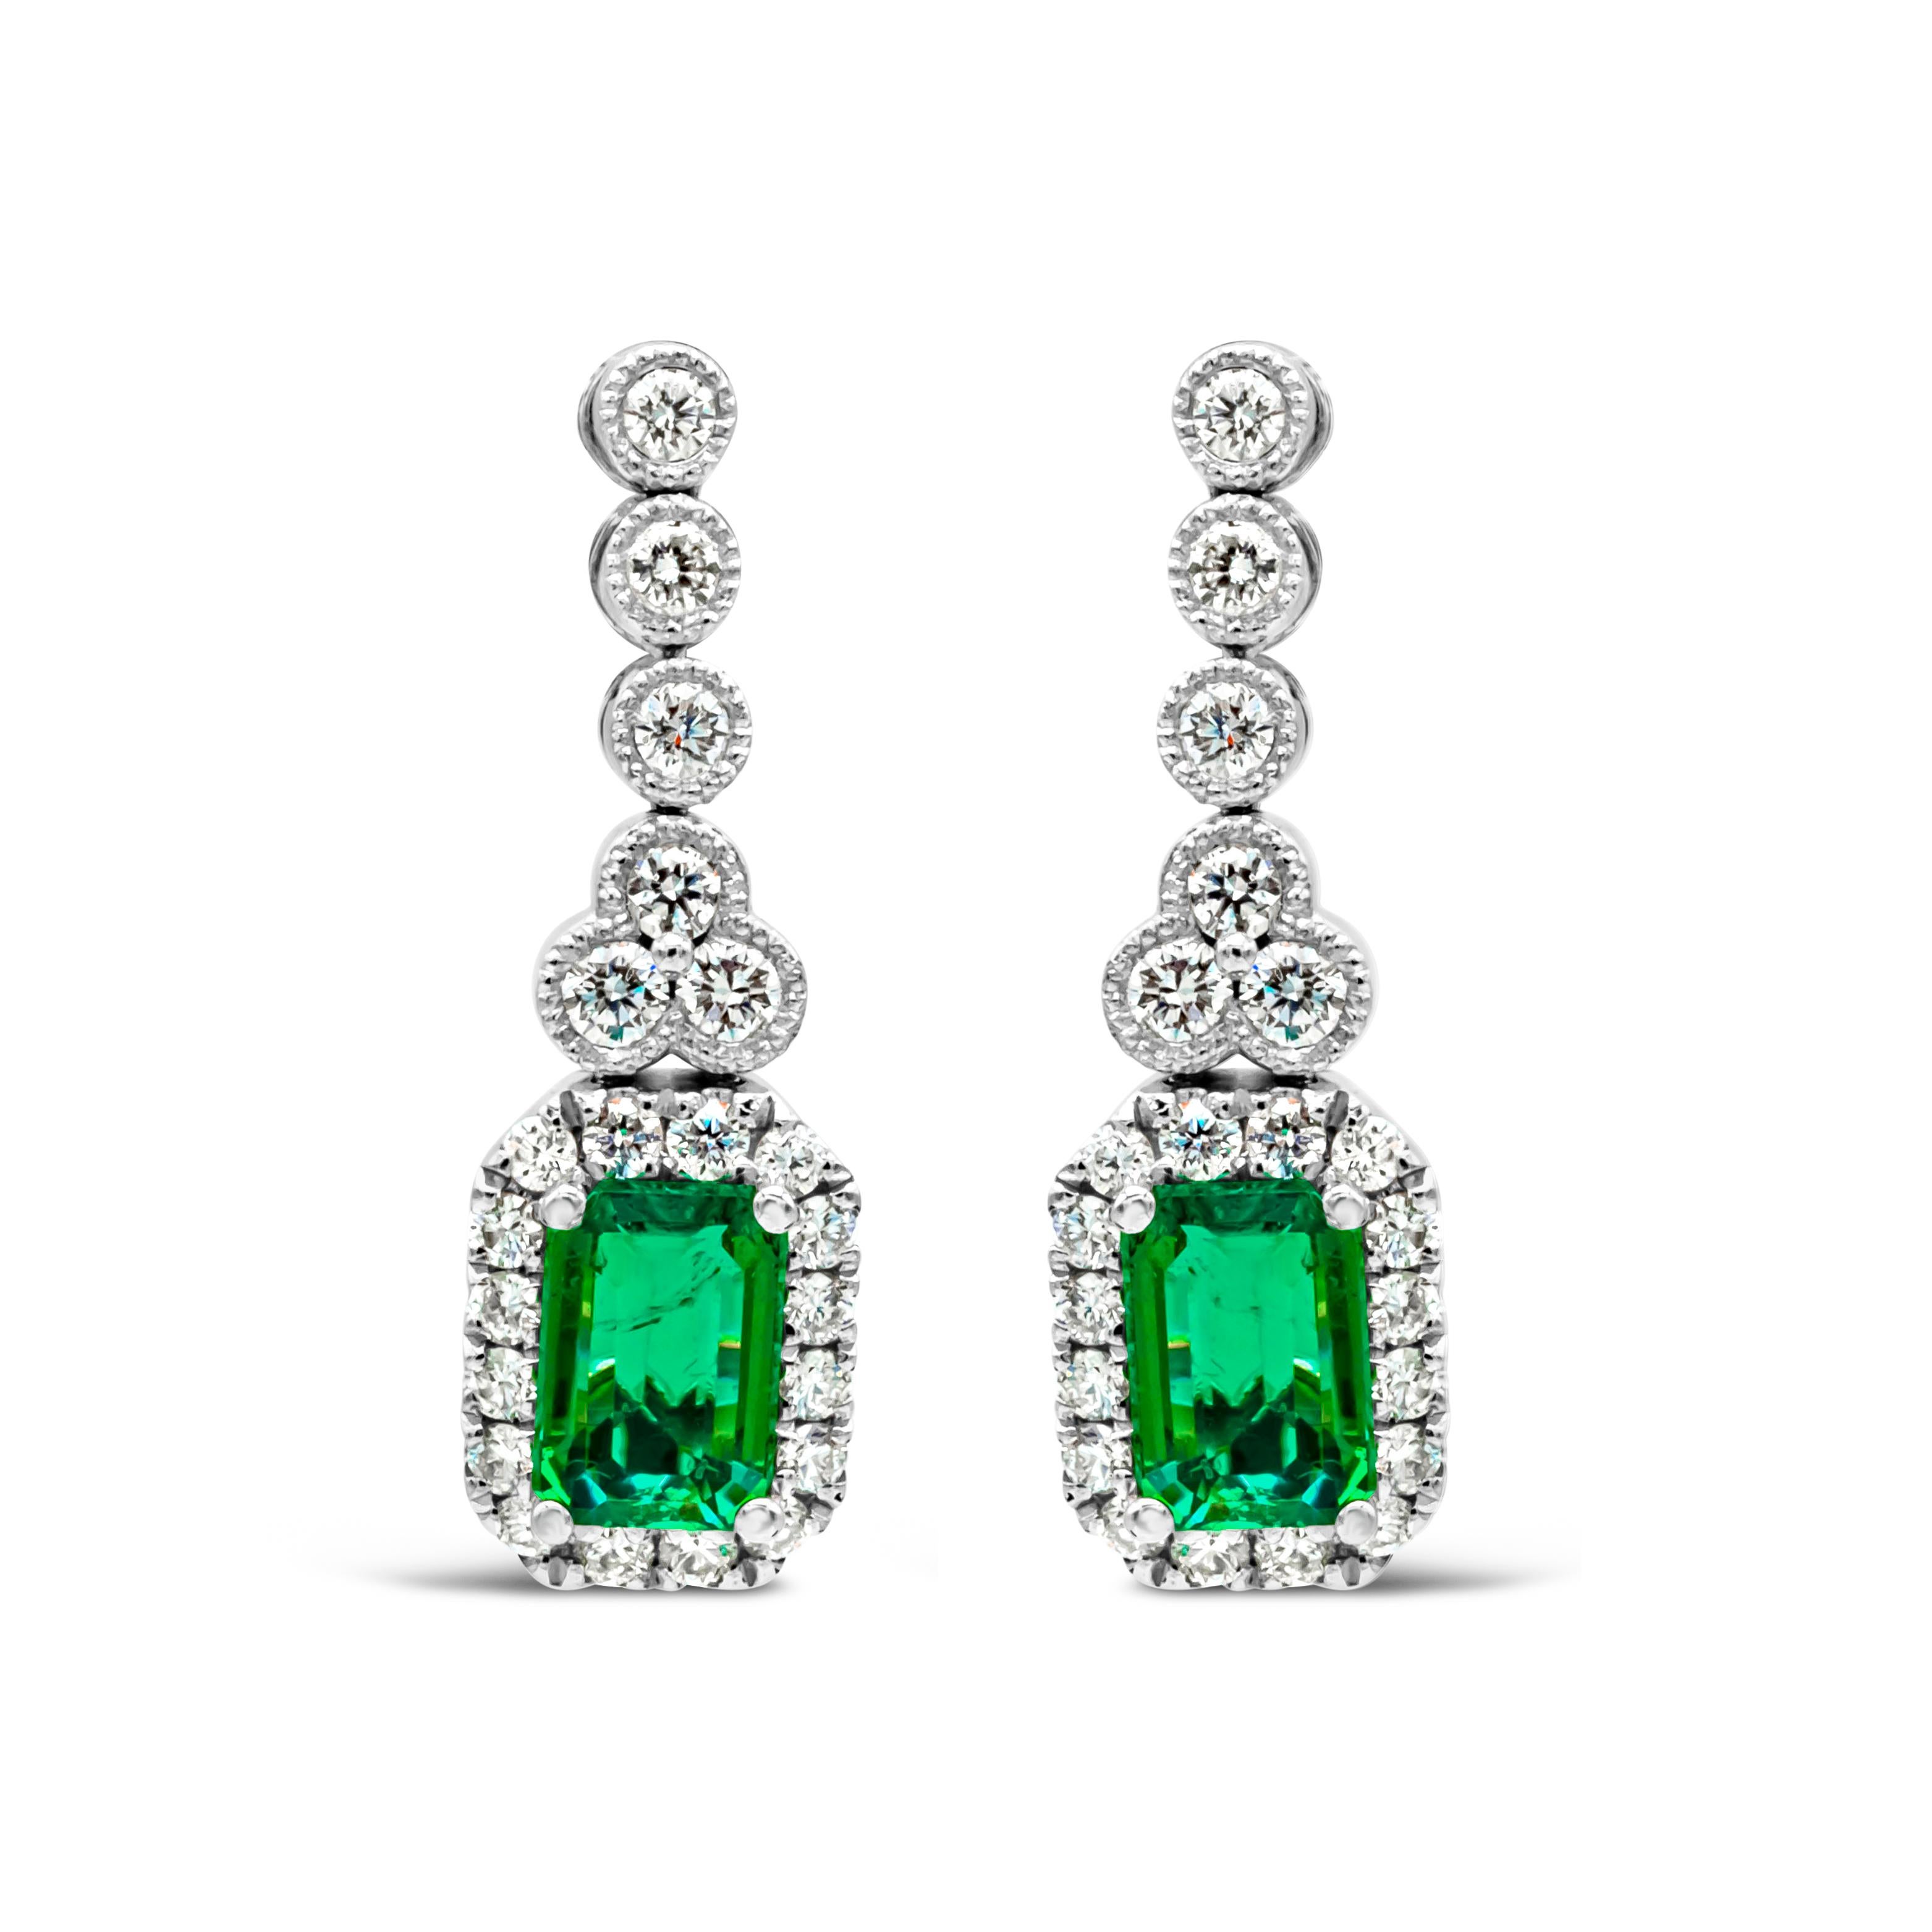 Jeder Ohrring zeigt einen sehr feinen grünen Smaragd im Smaragdschliff mit einem Gesamtgewicht von 1,02 Karat, gefasst in einer klassischen vierzackigen Fassung. Umgeben von einer einzigen Reihe runder Brillanten und aufgehängt an einer Lünette mit